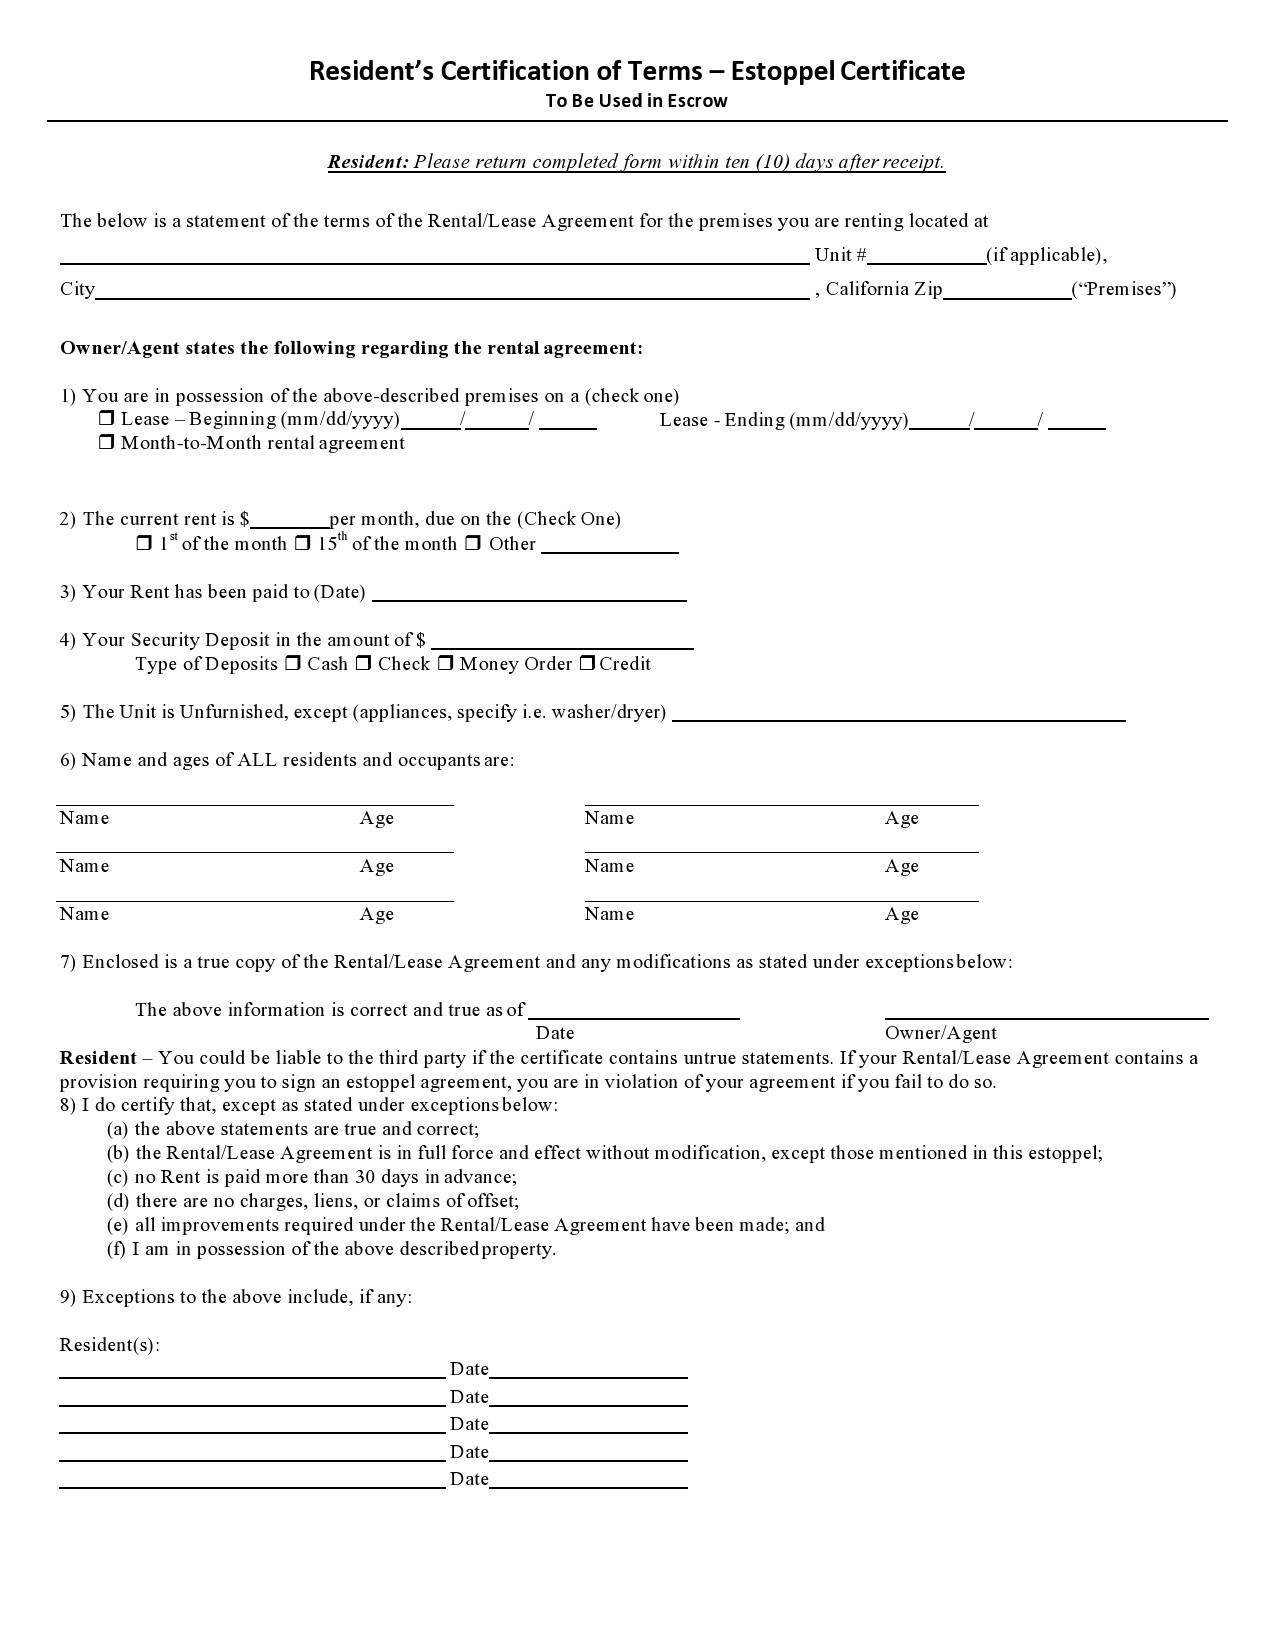 Free estoppel certificate form 21